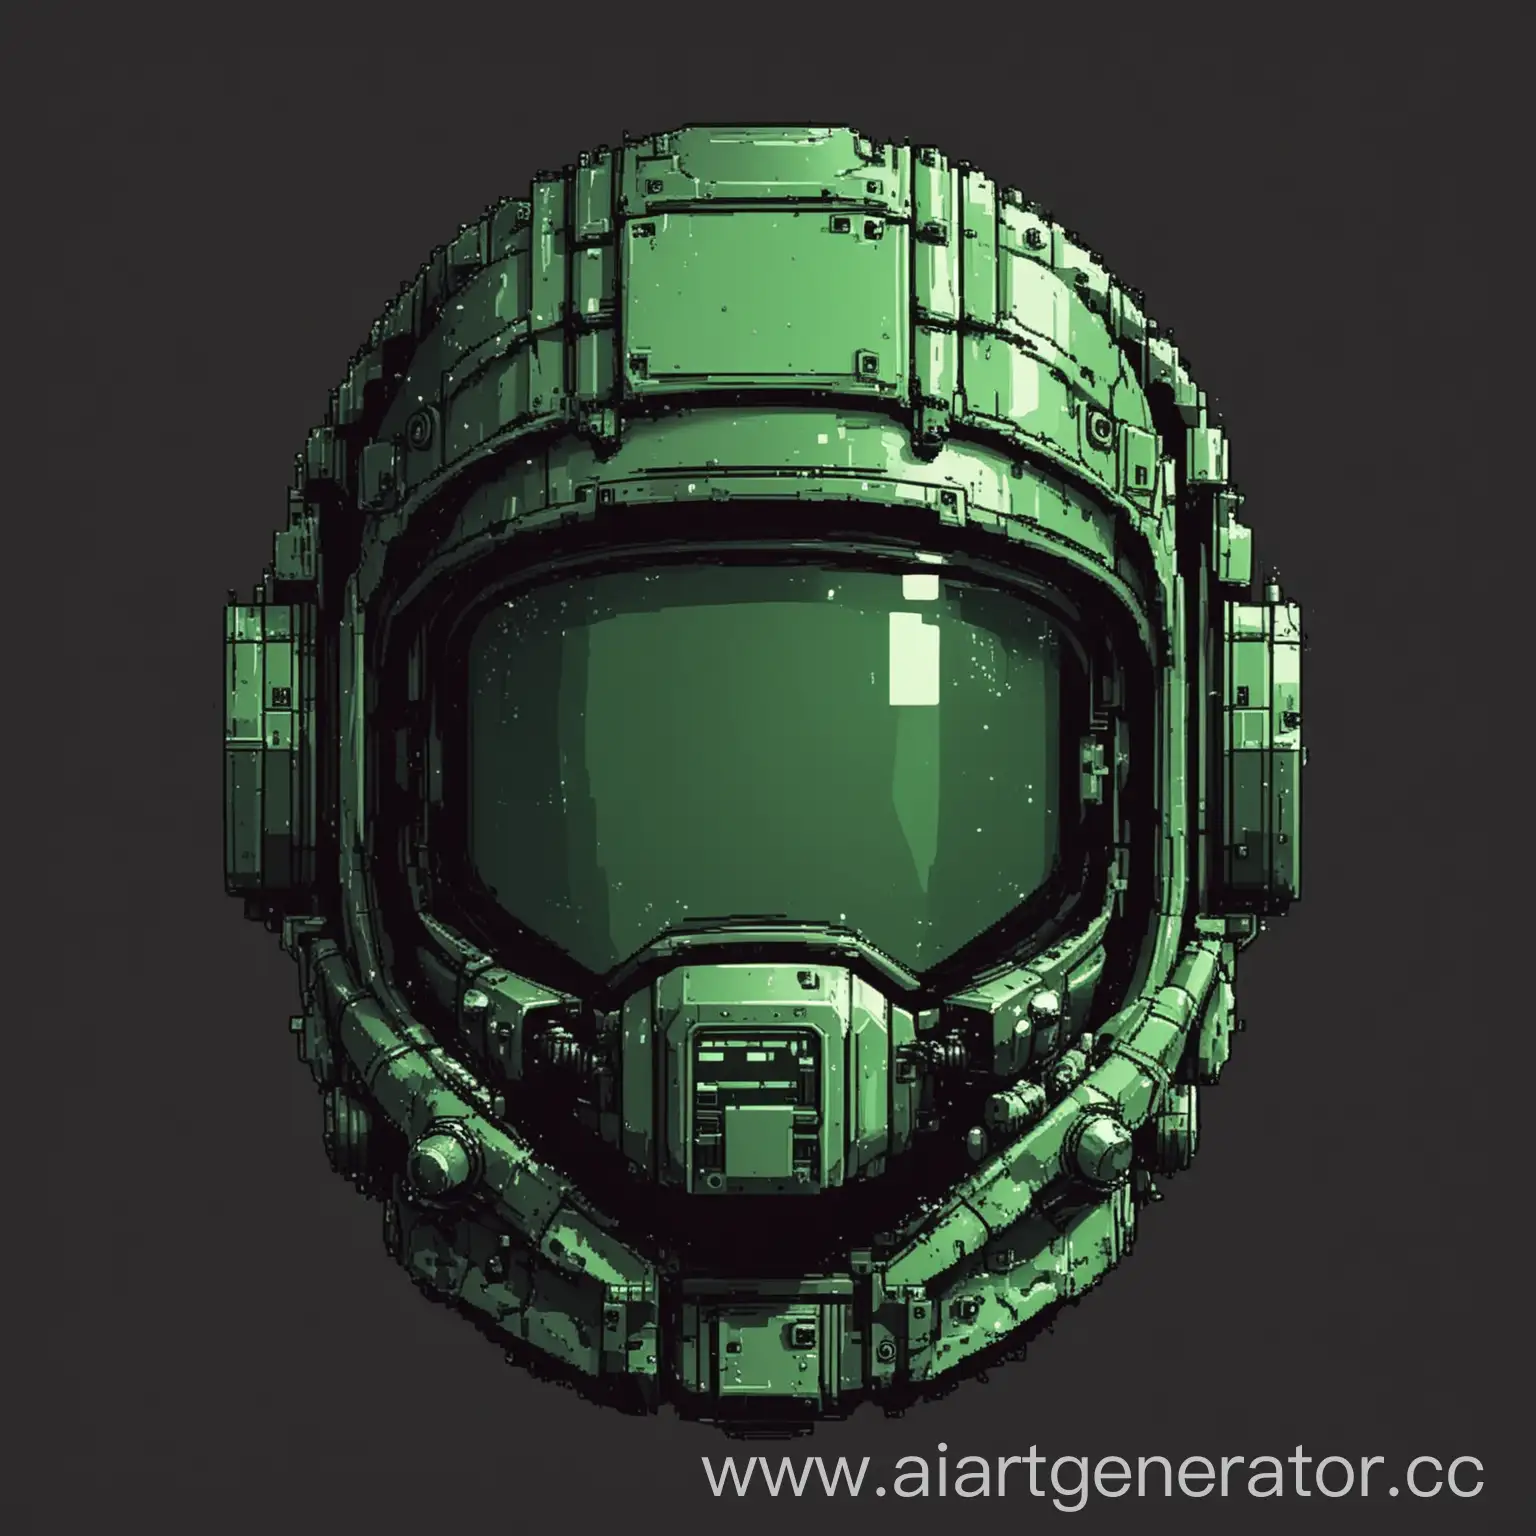 Нарисуй шлем космодесантника в 8 бит , используя только зеленый цвет, шлем должен быть с закрытым забралом